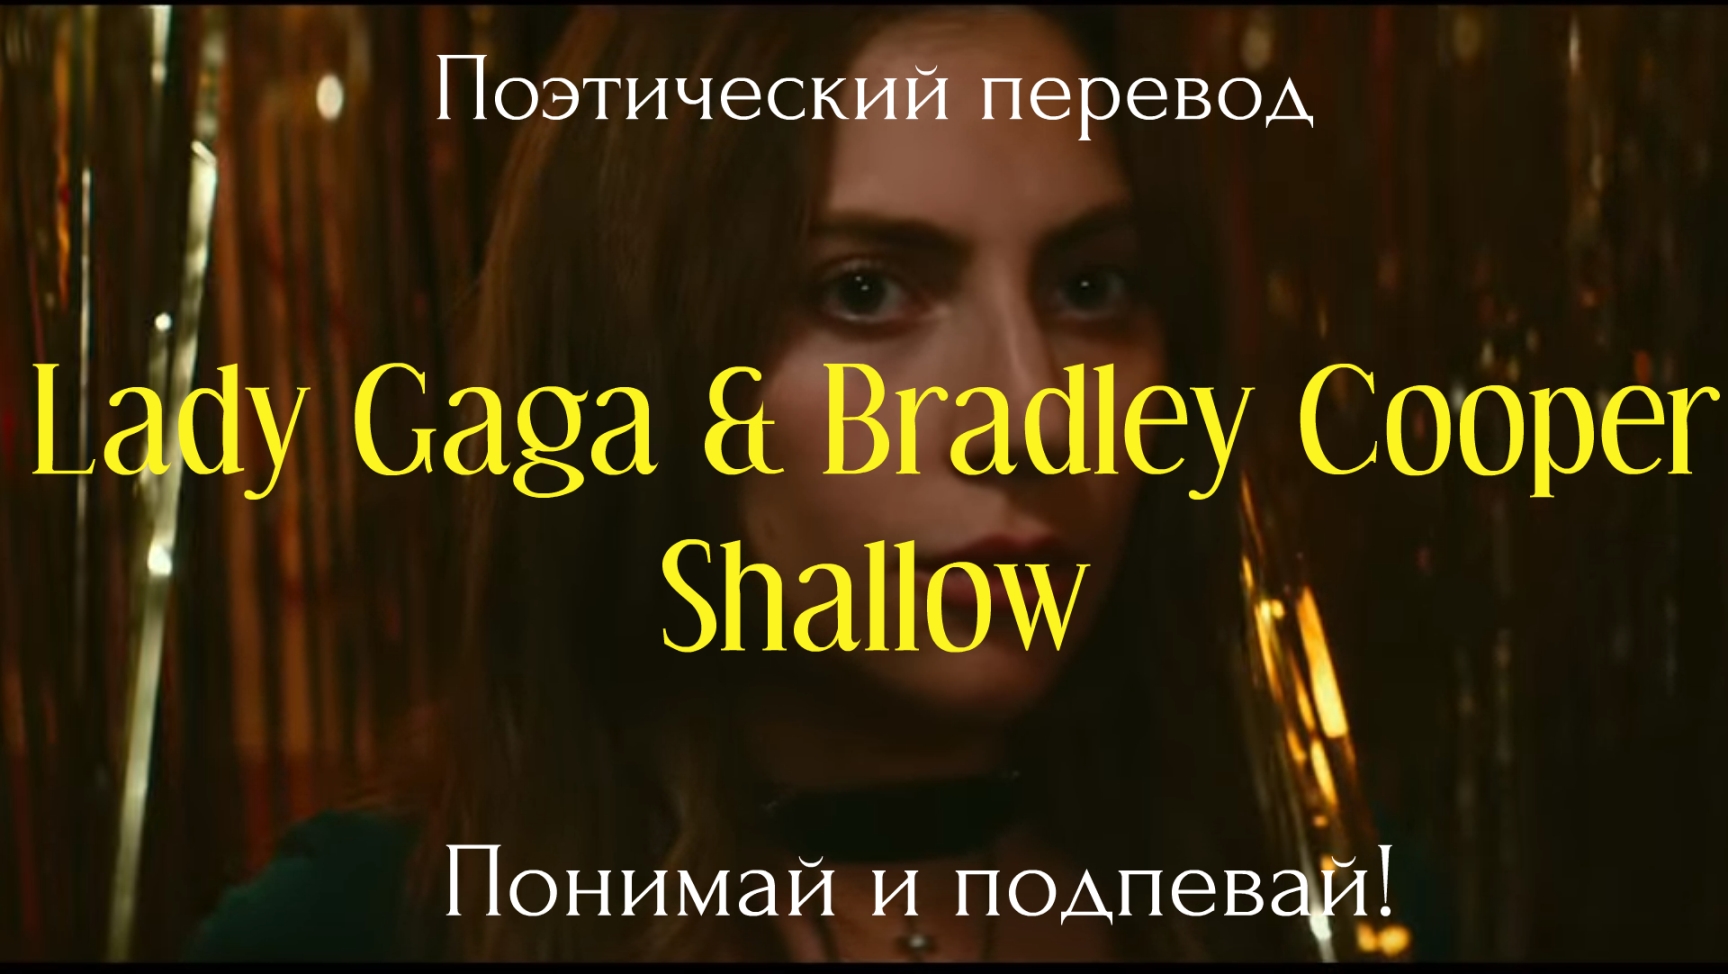 Песня леди гага перевод на русский. Lady Gaga, Bradley Cooper shallow перевод. Слова леди Гага и Брэдли Купер. Леди Гага и Брэдли Купер песня текст. Shallow перевод.